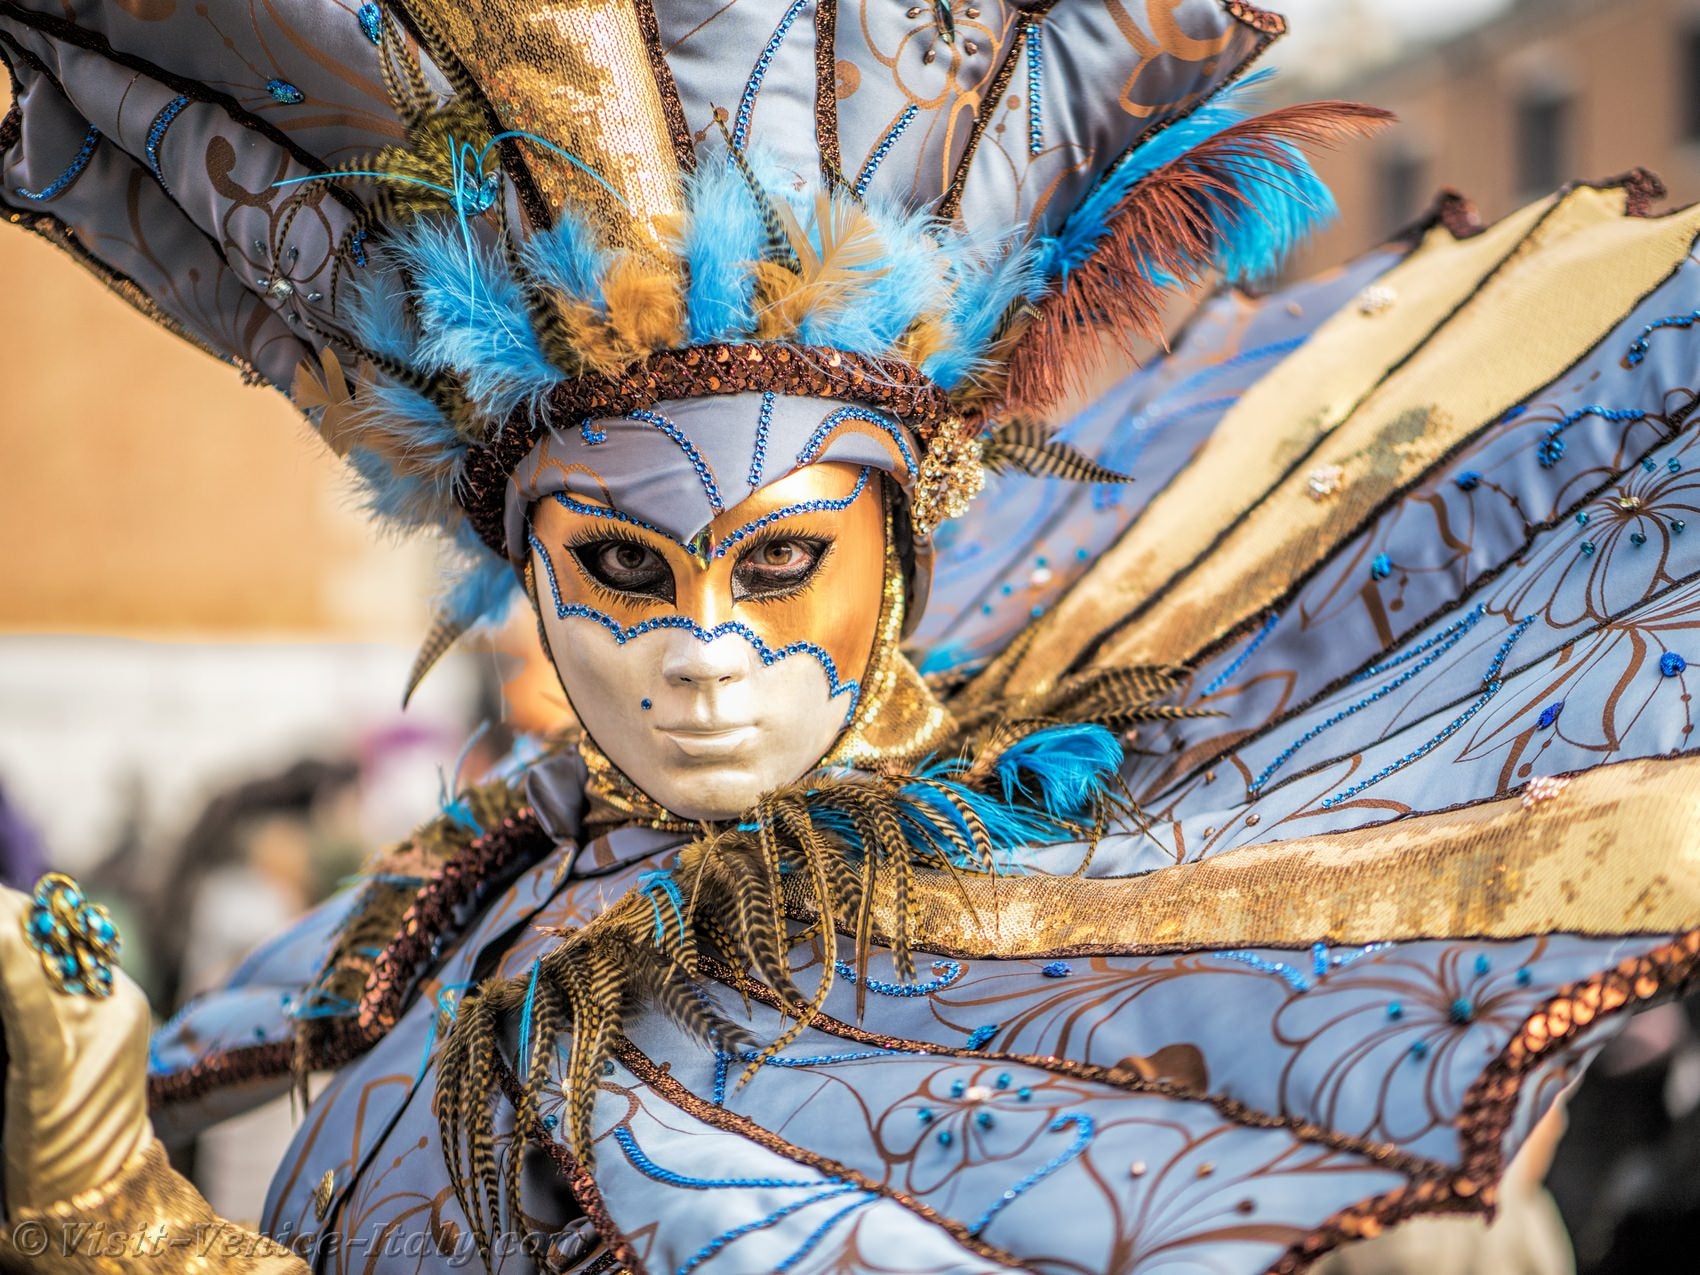 garson arasında heyecan verici italya maske festivali